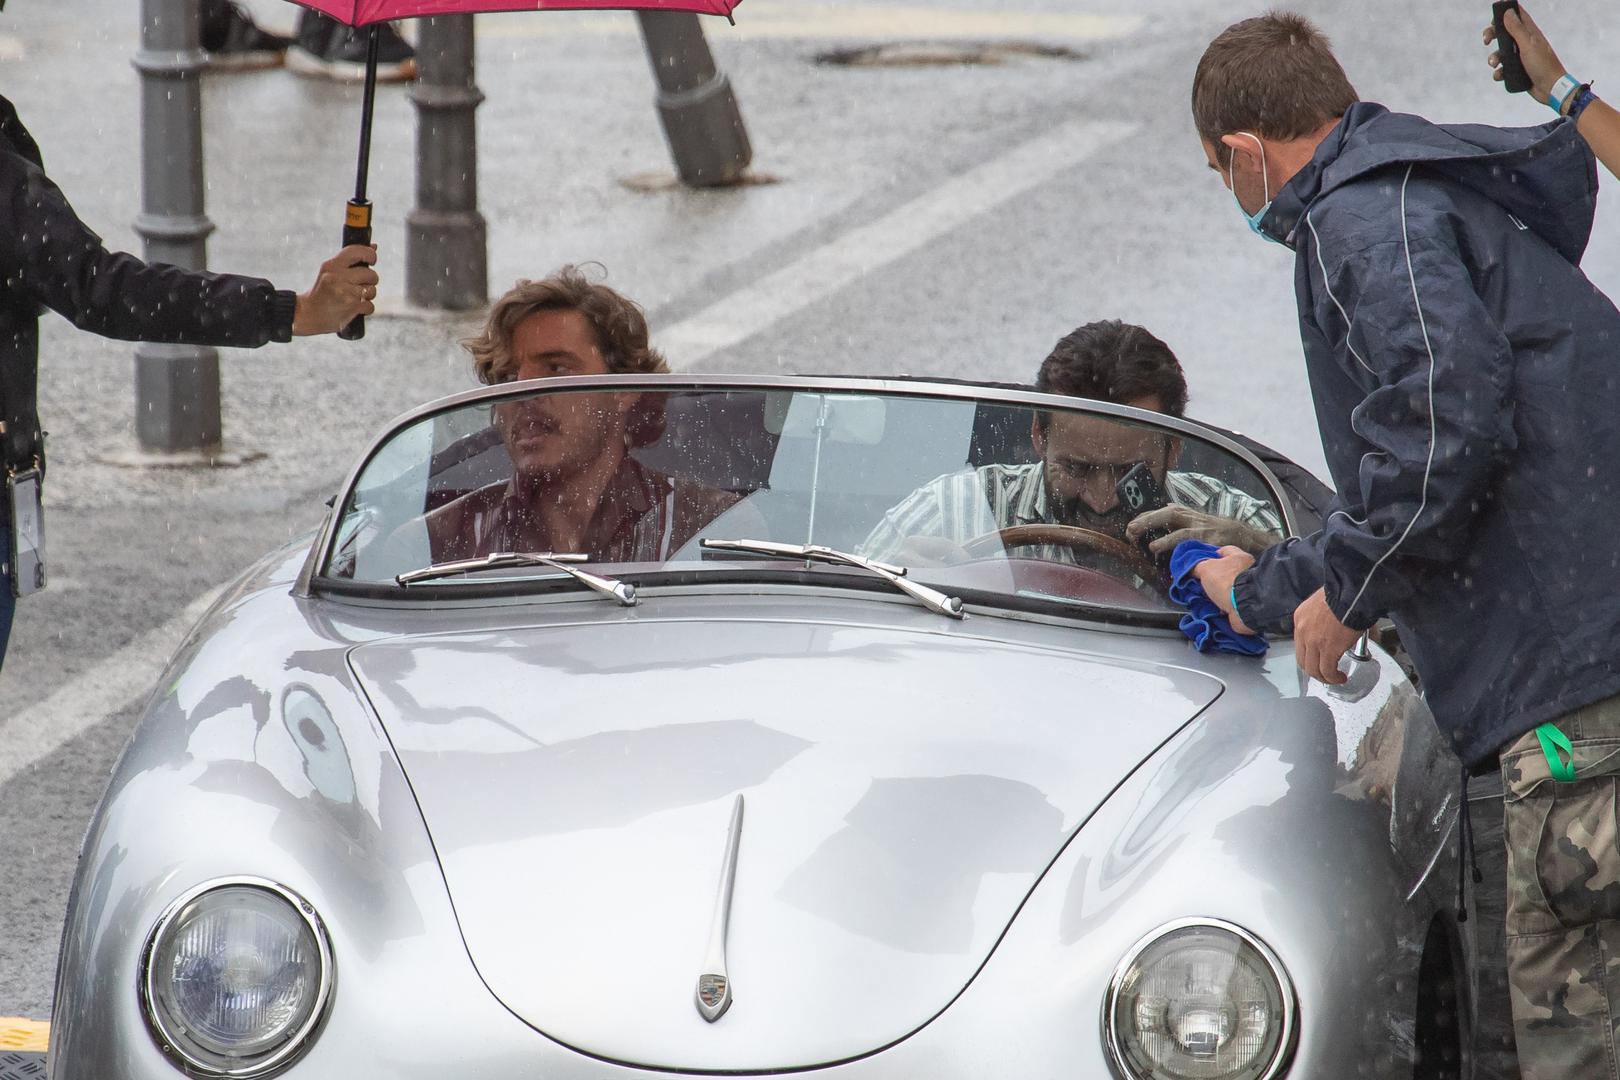 Uz Cagea, u filmu glumi i Pedro Pascal, glumac koji nam je dobro poznat po ulozi Javiera Peñe u seriji "Narcos", a s njim je Cage danas jurcao ulicama Dubrovnika u Porscheu.